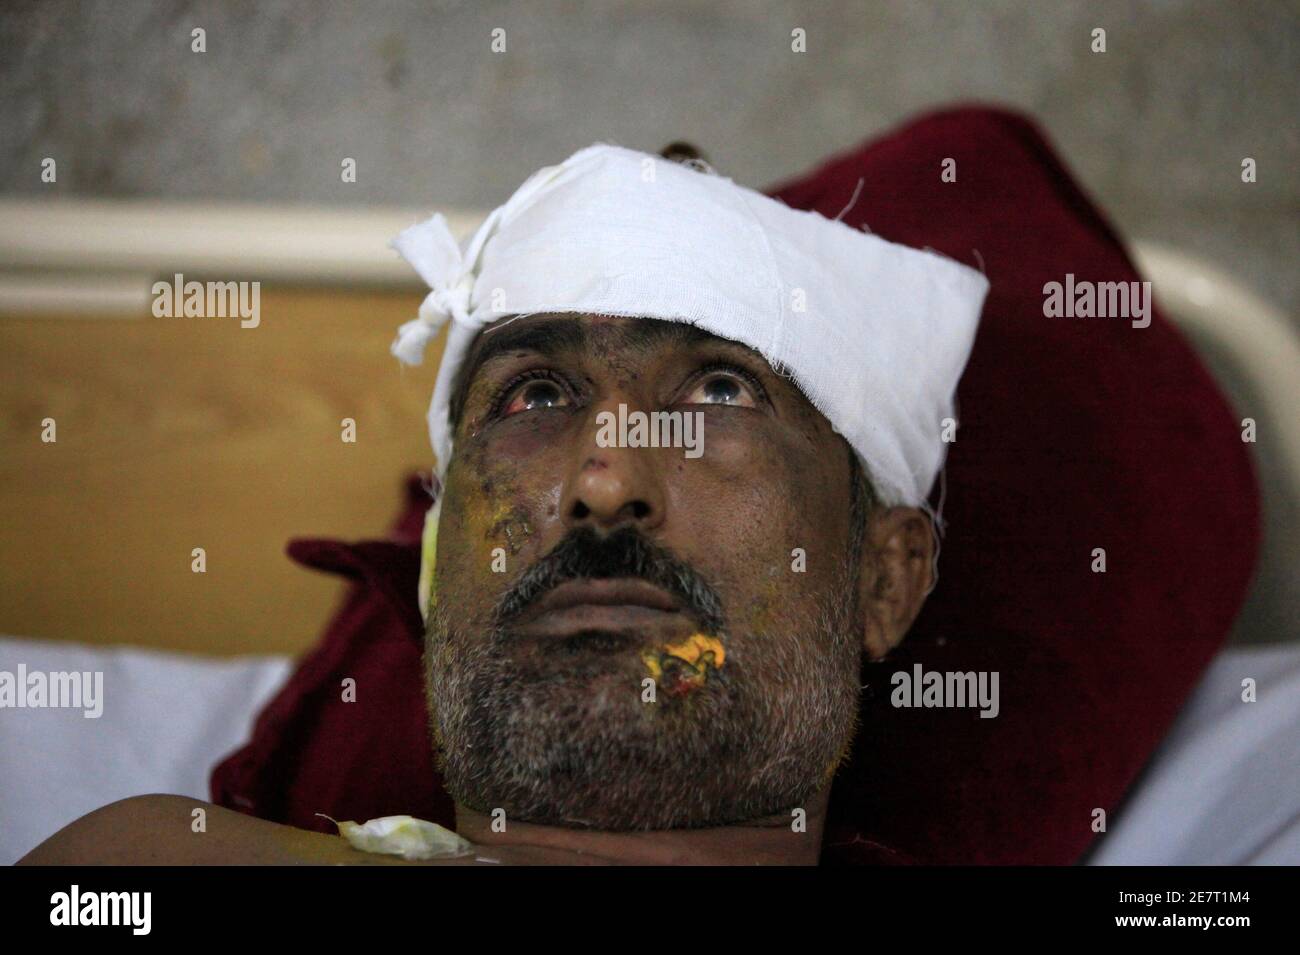 Ein Mann verletzt von einer Bombenexplosion in einer Shi'ite-Moschee ist in einem Krankenhaus in Sargodha, in der pakistanischen Provinz Punjab 19. Juli 2010 behandelt. Mindestens 15 Menschen wurden am Sonntag, den mutmaßlichen Selbstmordanschlag auf ein religiöses Zentrum der Minderheit Shi'ite Muslime in zentralen Pakistan verletzt Polizei sagte. Lokale Medien berichteten drei bei einem Bombenanschlag getötet. REUTERS/Faisal Mahmood (PAKISTAN - Tags: Unruhen Politik Kriminalität Gesetz) Stockfoto